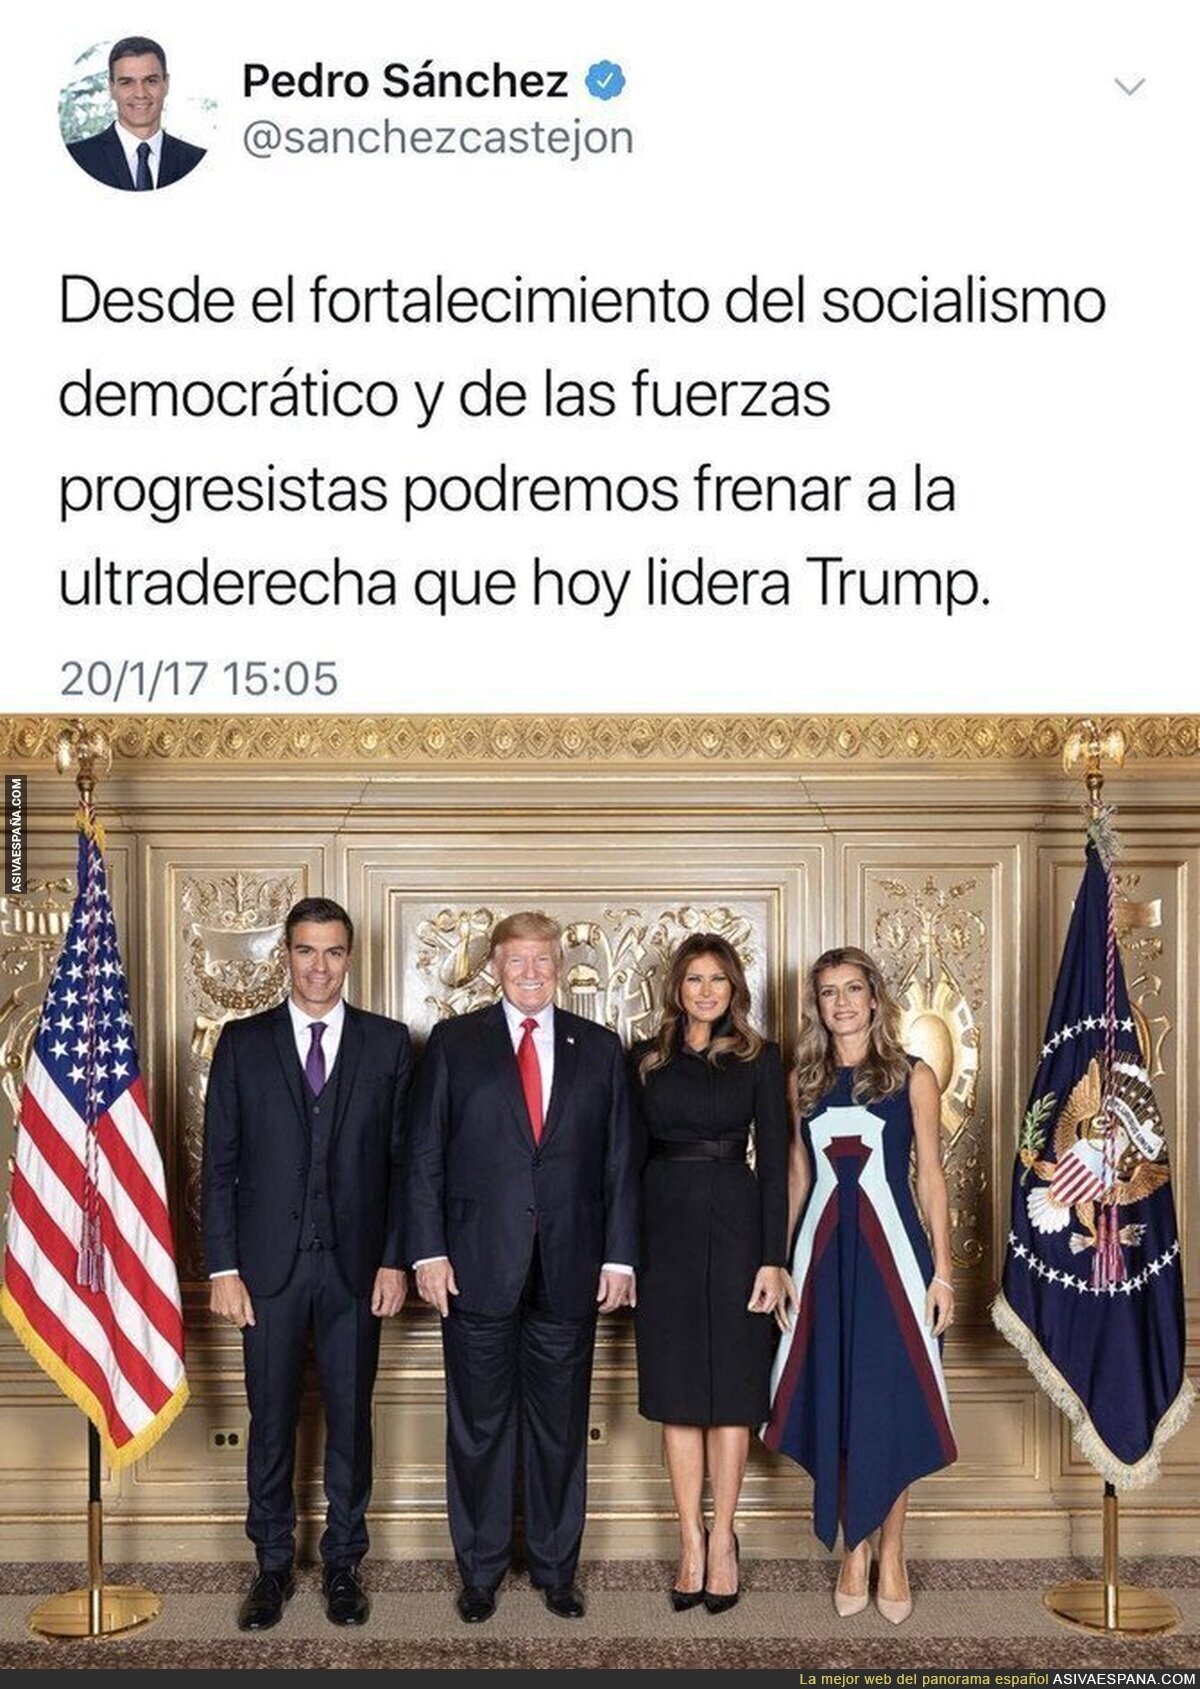 Pedro Sánchez empieza a frenar a Trump